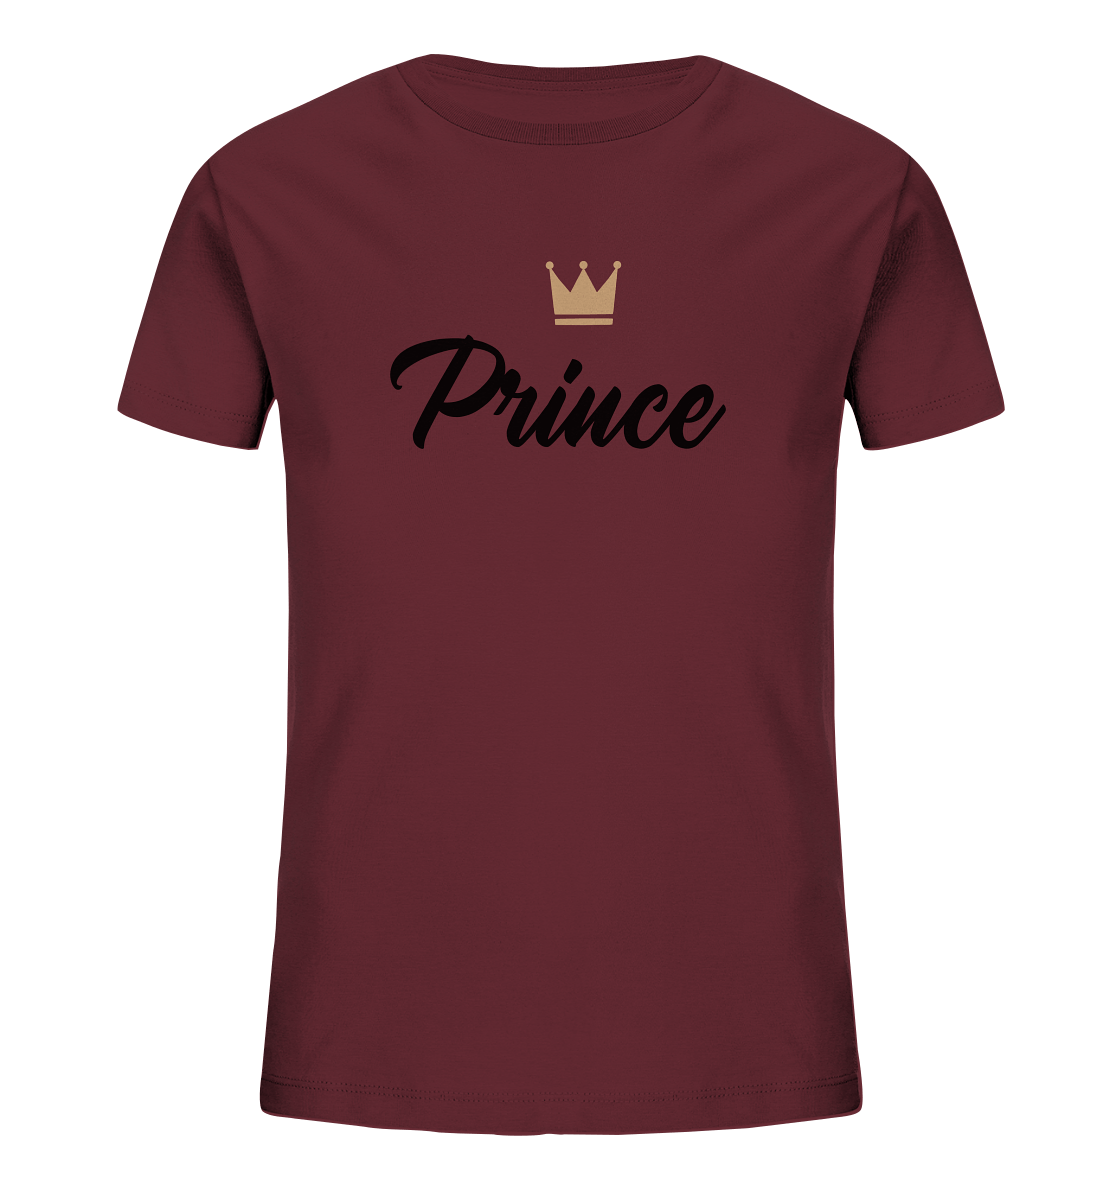 Prince T-Shirt Familienoutfit Set